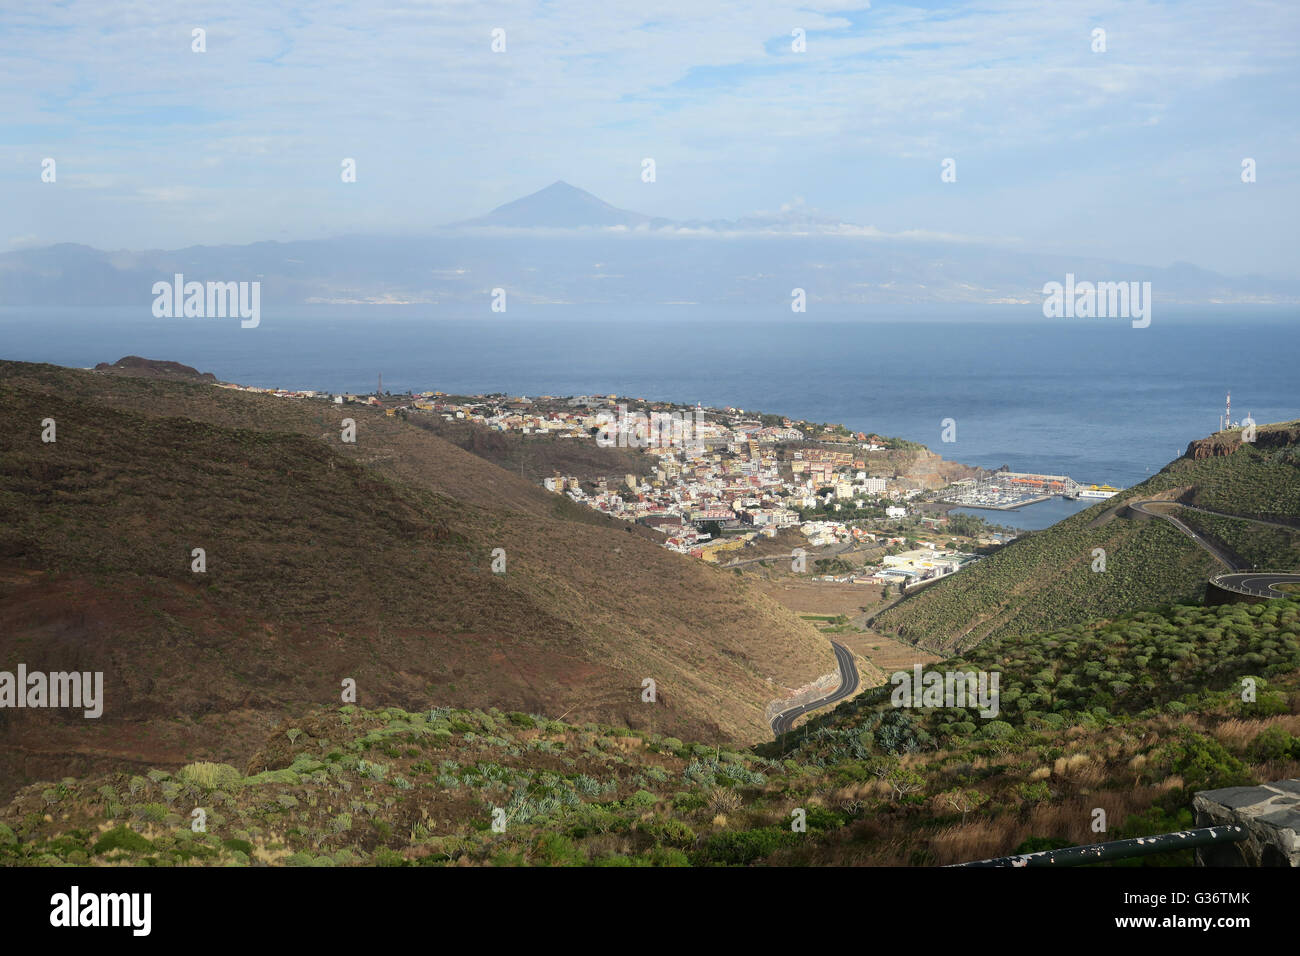 La Gomera. La capitale dell'isola, San Sebastian de la Gomera, con il Pico del Teide (Mount Teide) su Tenerife a distanza Foto Stock